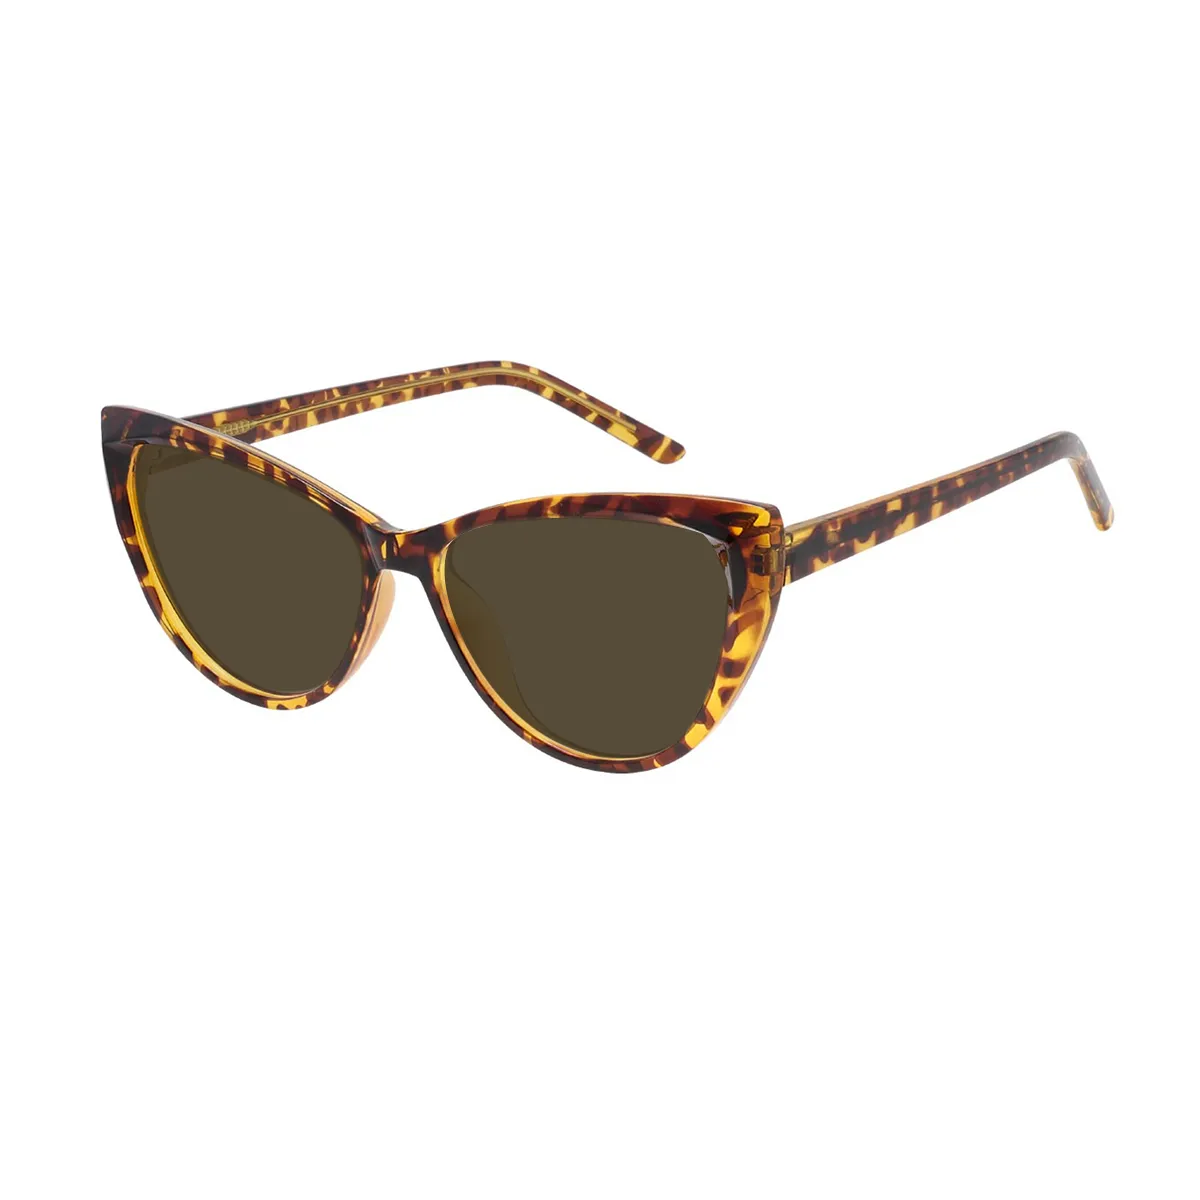 Celia - Cat-eye Tortoiseshell Sunglasses for Women